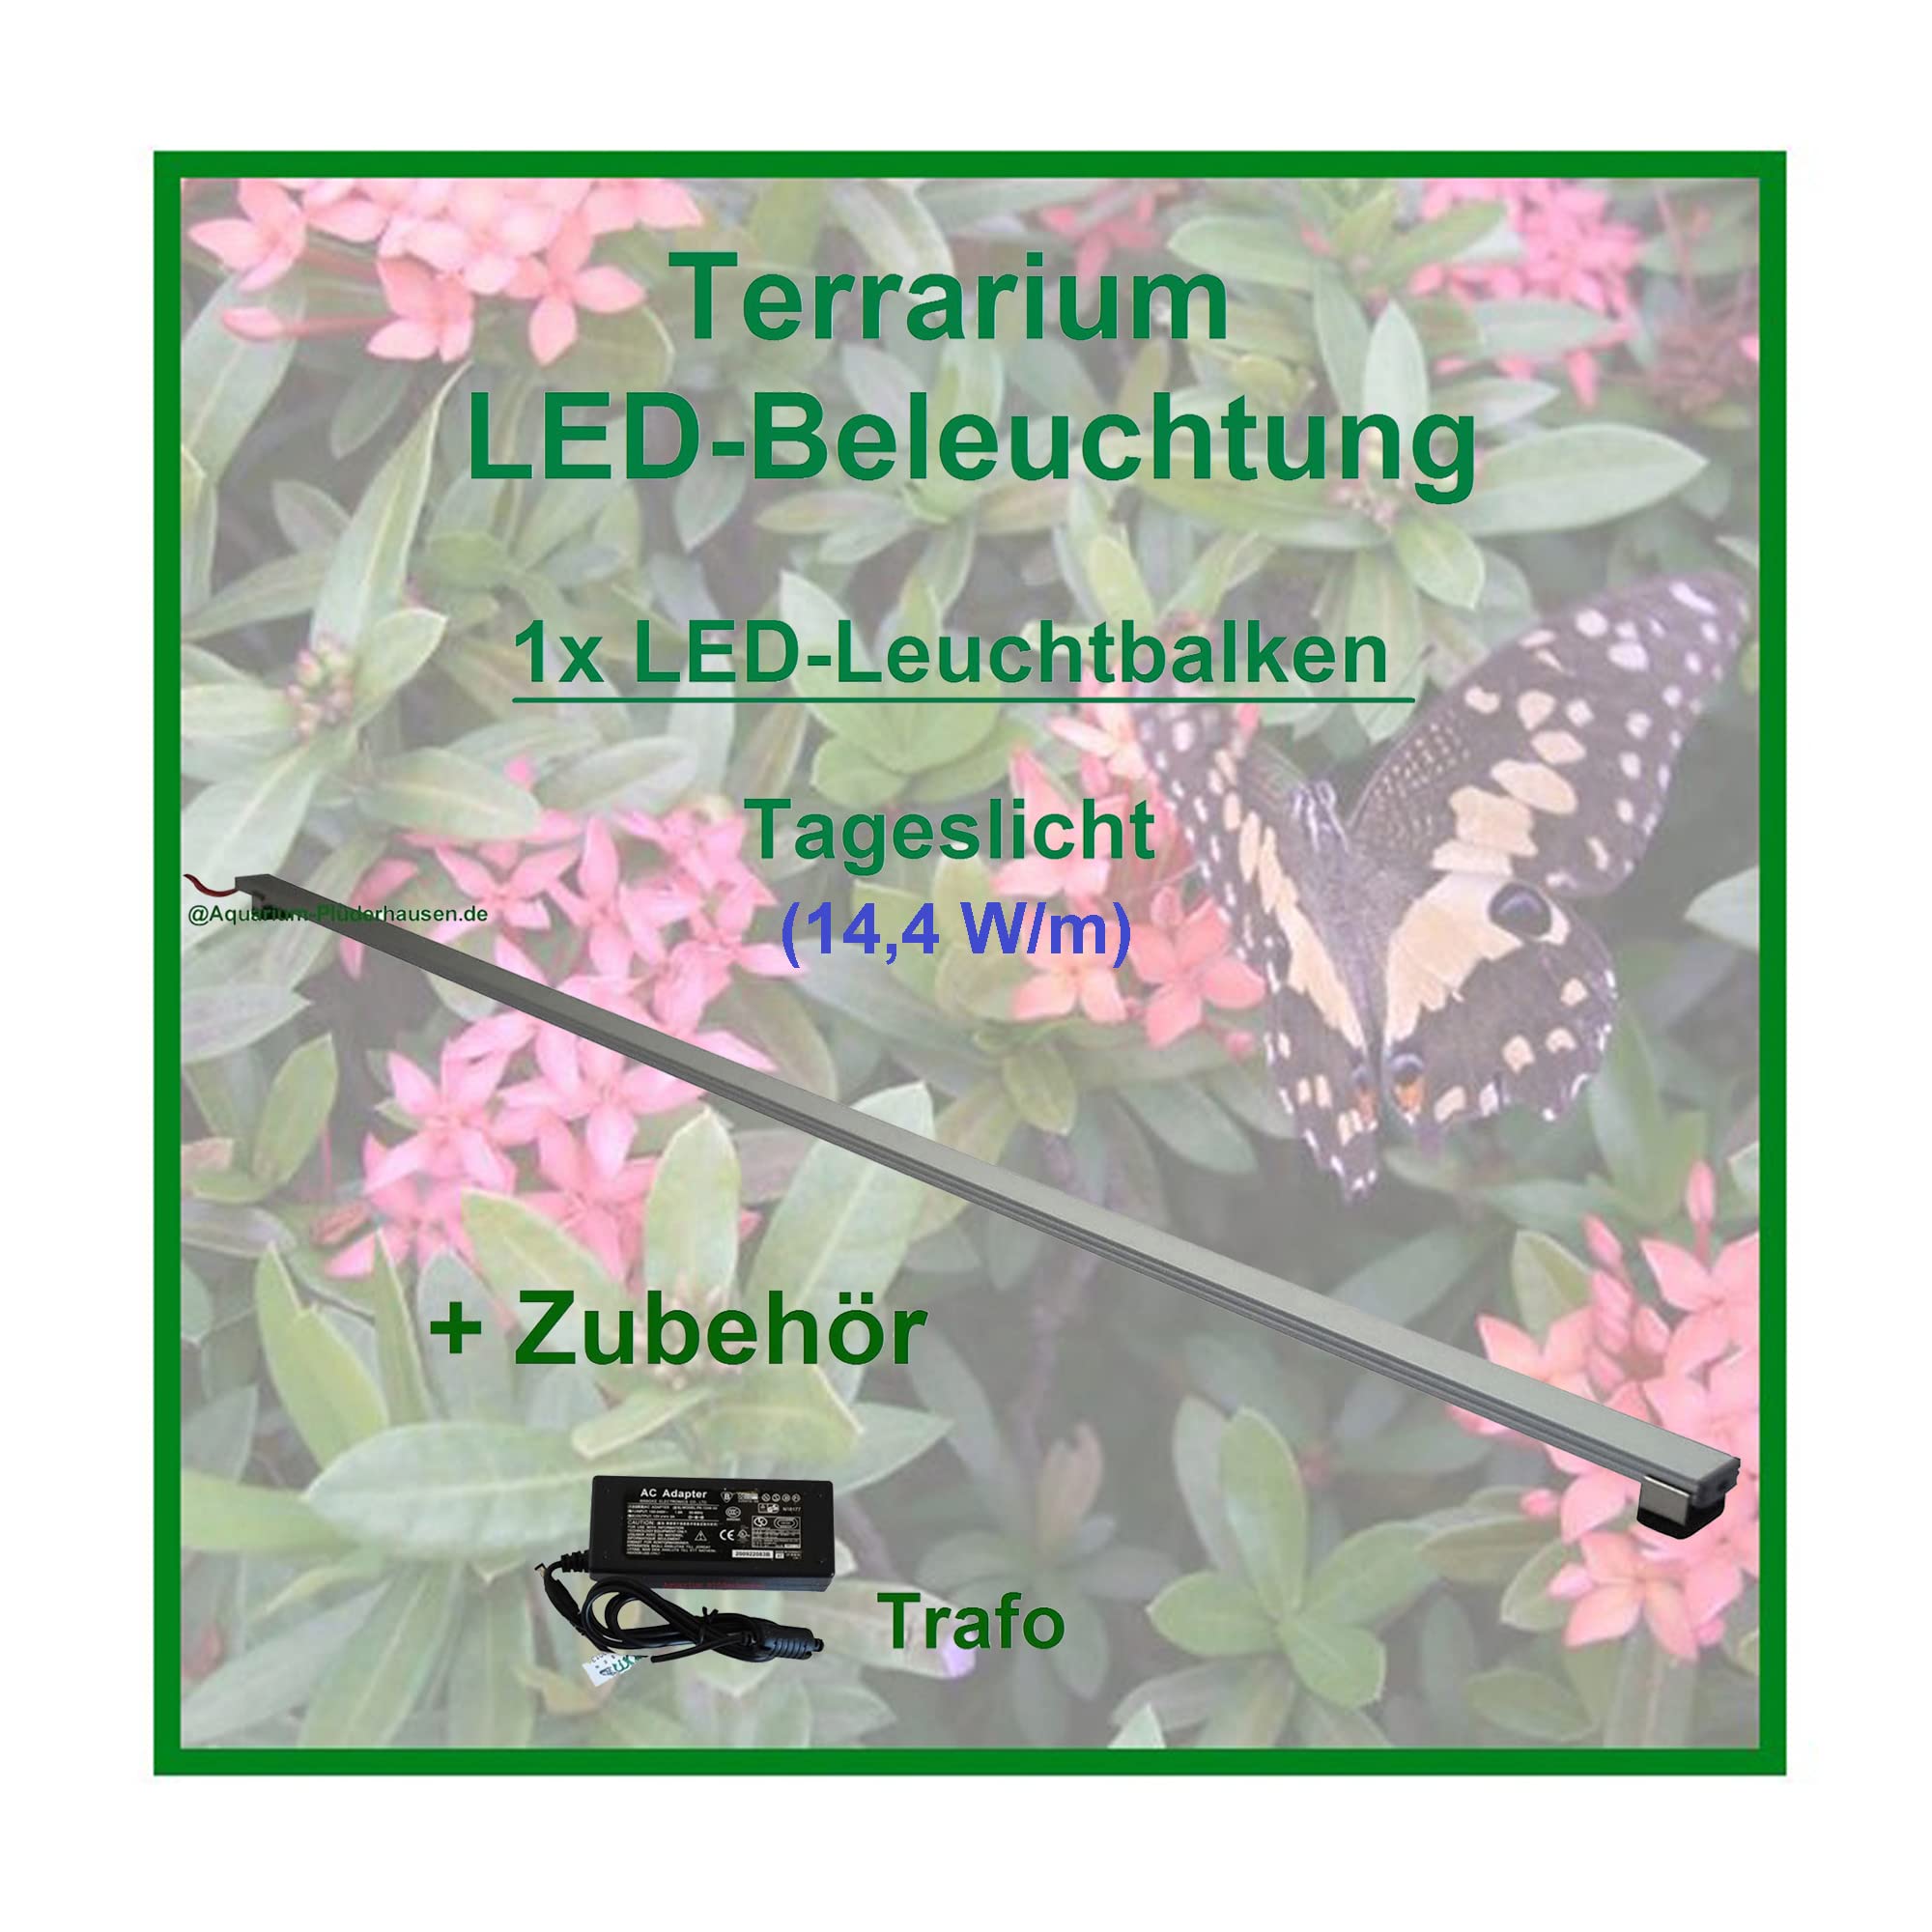 Regenwald Terrarium, Set1: 1x LED-Beleuchtung 80 cm + Zubehör, LED Leuchtbalken,LED Tropen Pflanzenlicht